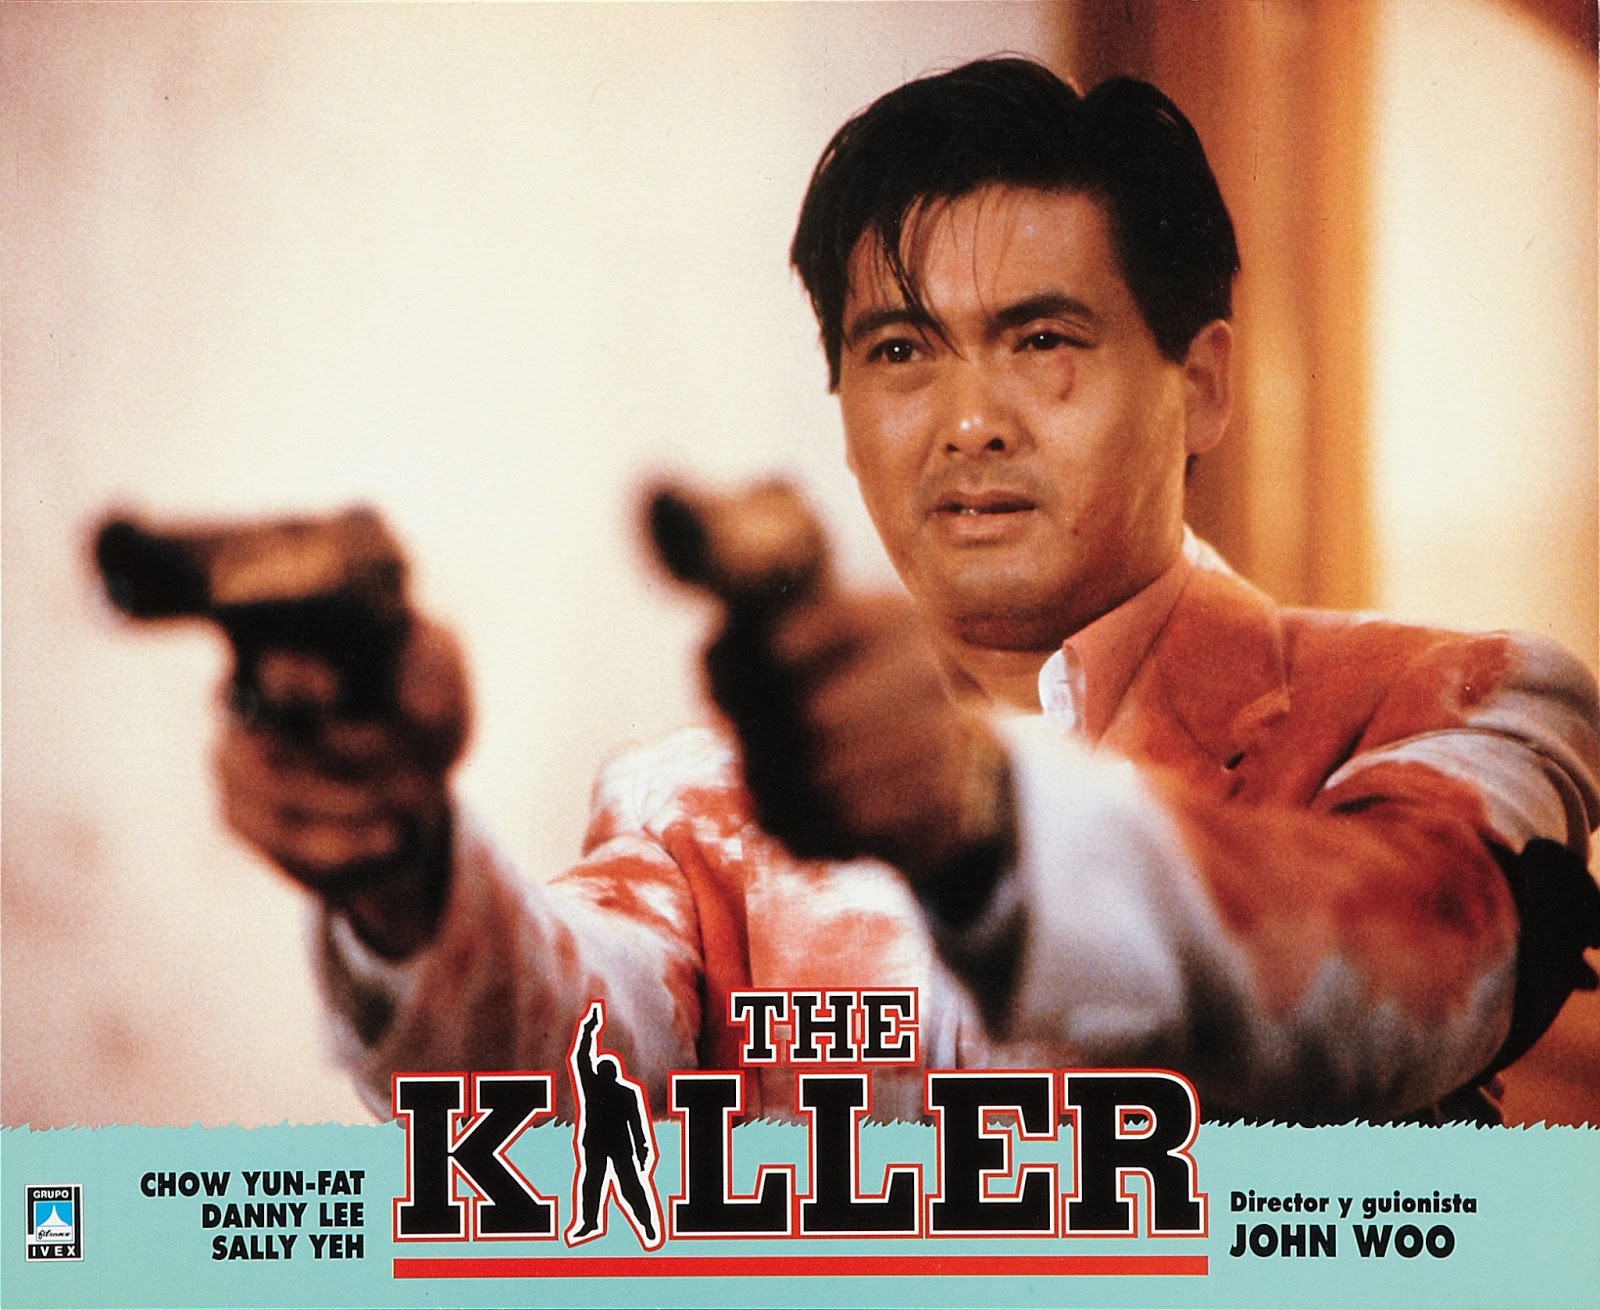 Điệp huyết song hùng - The killer